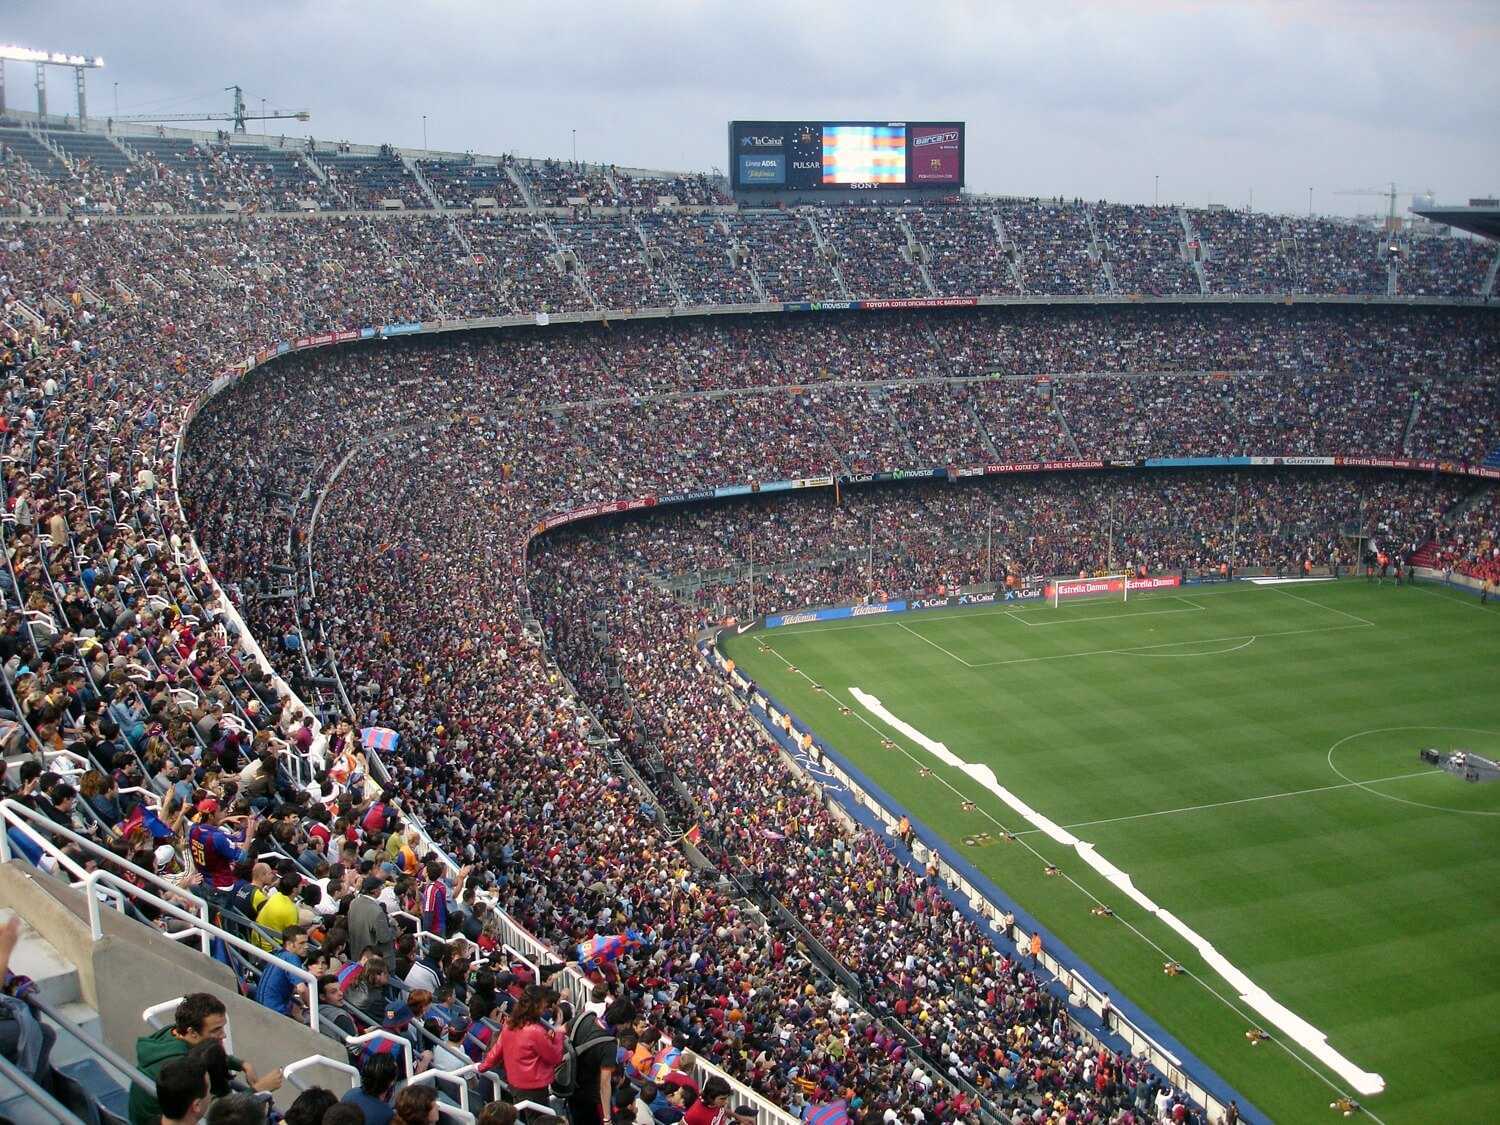 Camp Nou turas (FC Barcelona muziejus) - Bilietai, laikas ir Patarimai